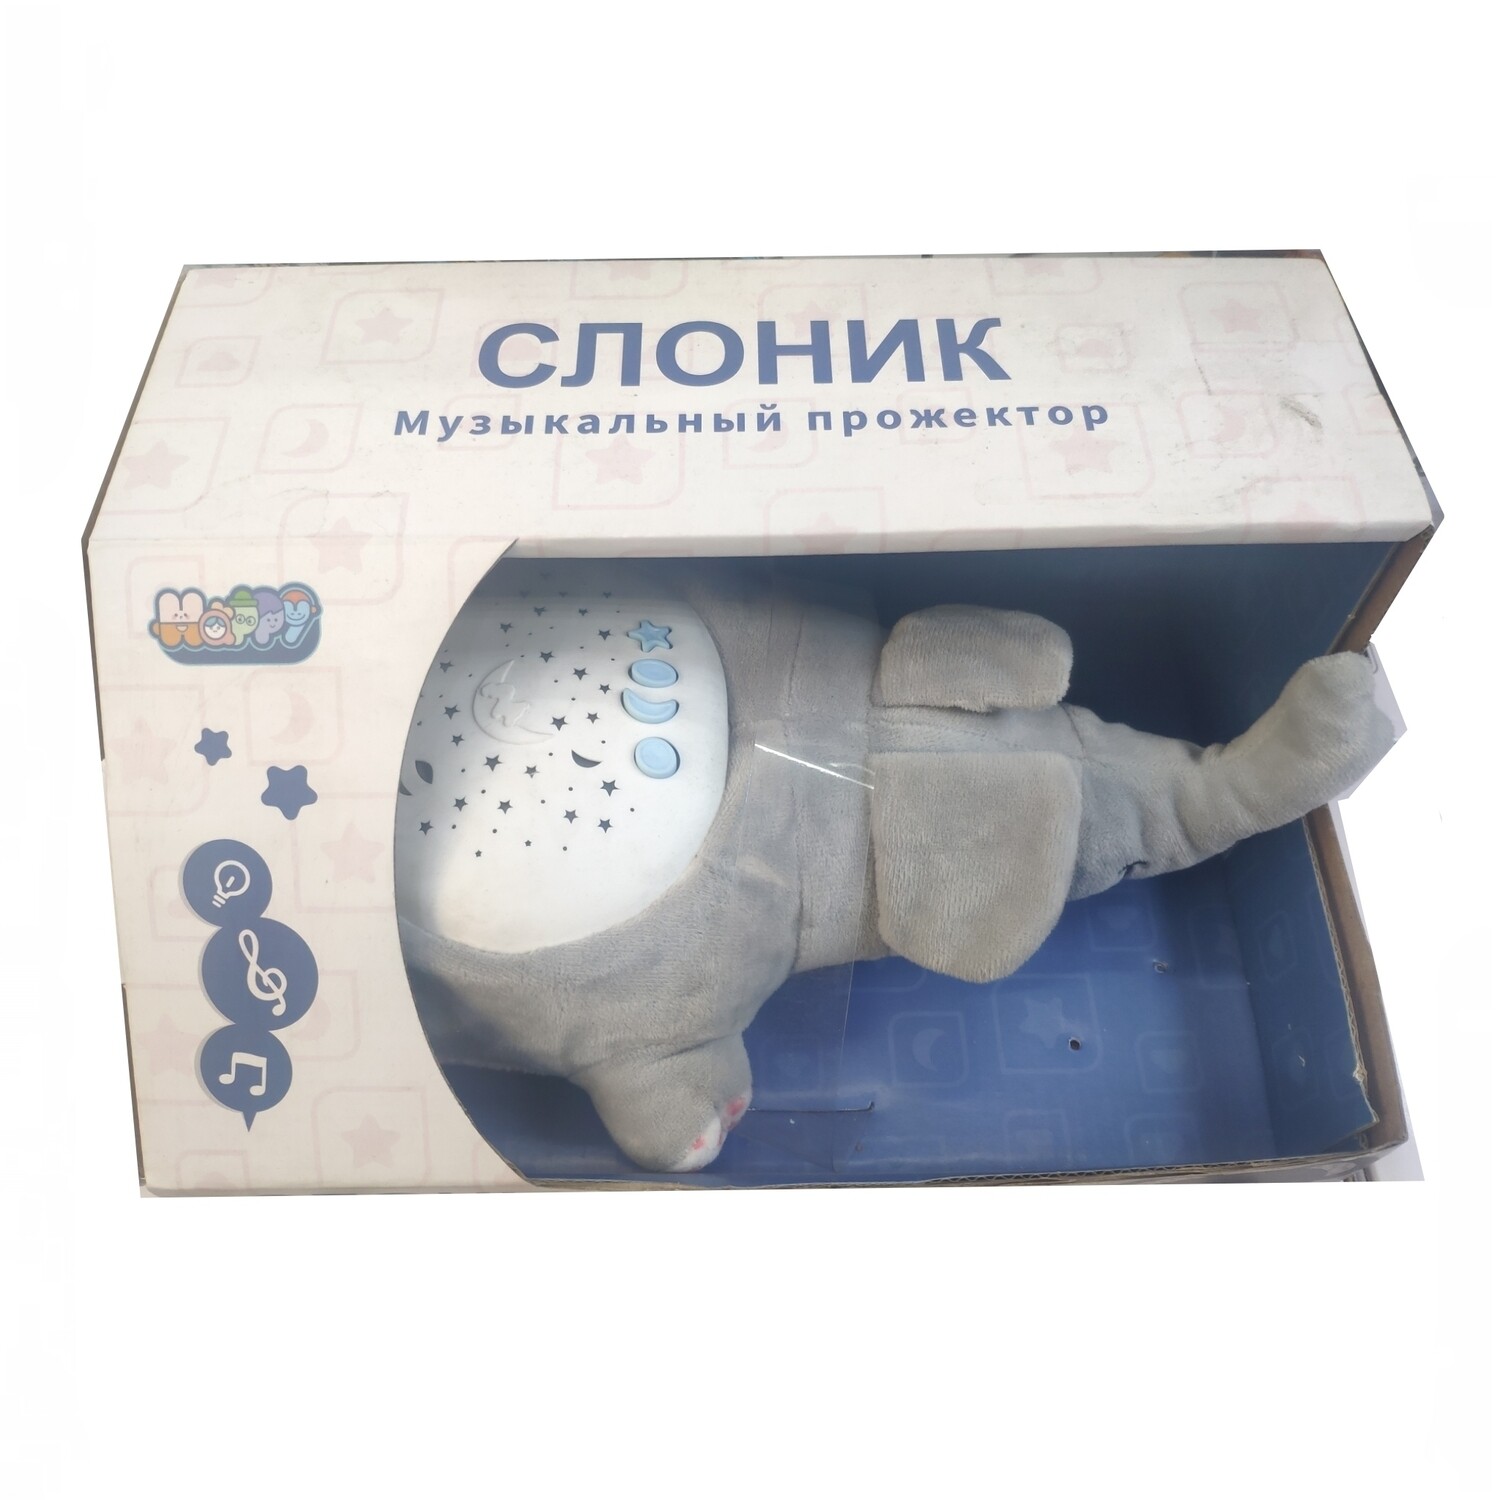 Интерактивная музыкальная мягкая игрушка 3в1 ночник, проектор, игрушка "Музыкальный прожектор Слоник"